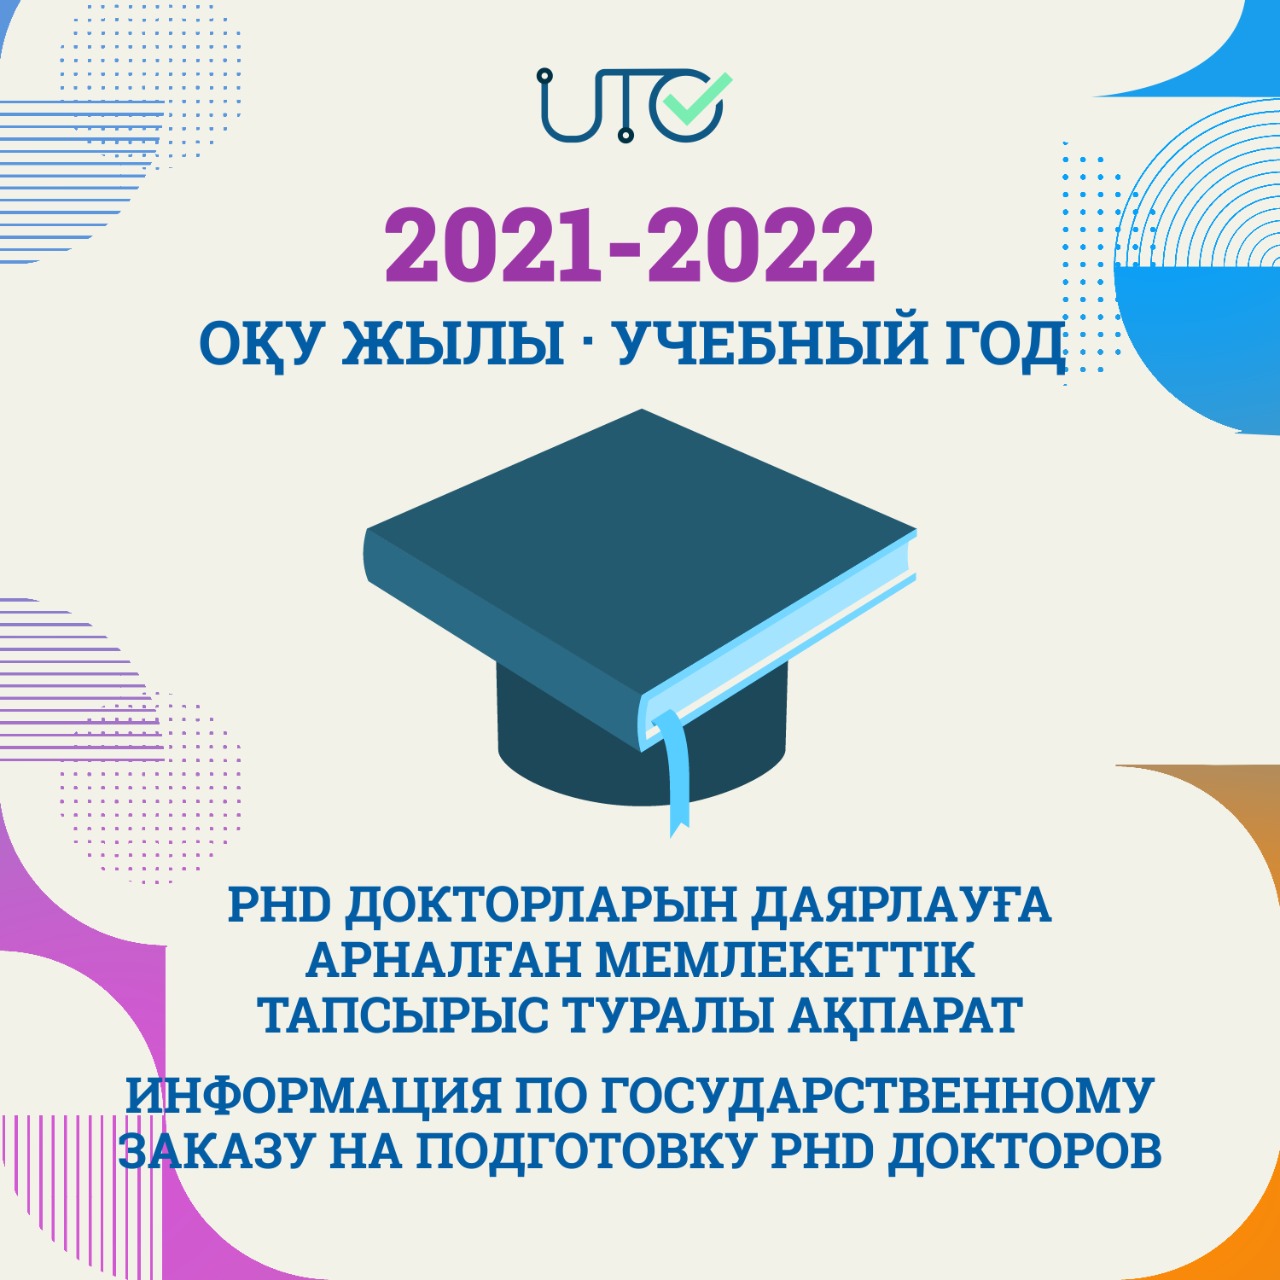 Грант на подготовку докторов PhD в ВУЗах на 2021-2022 учебный год